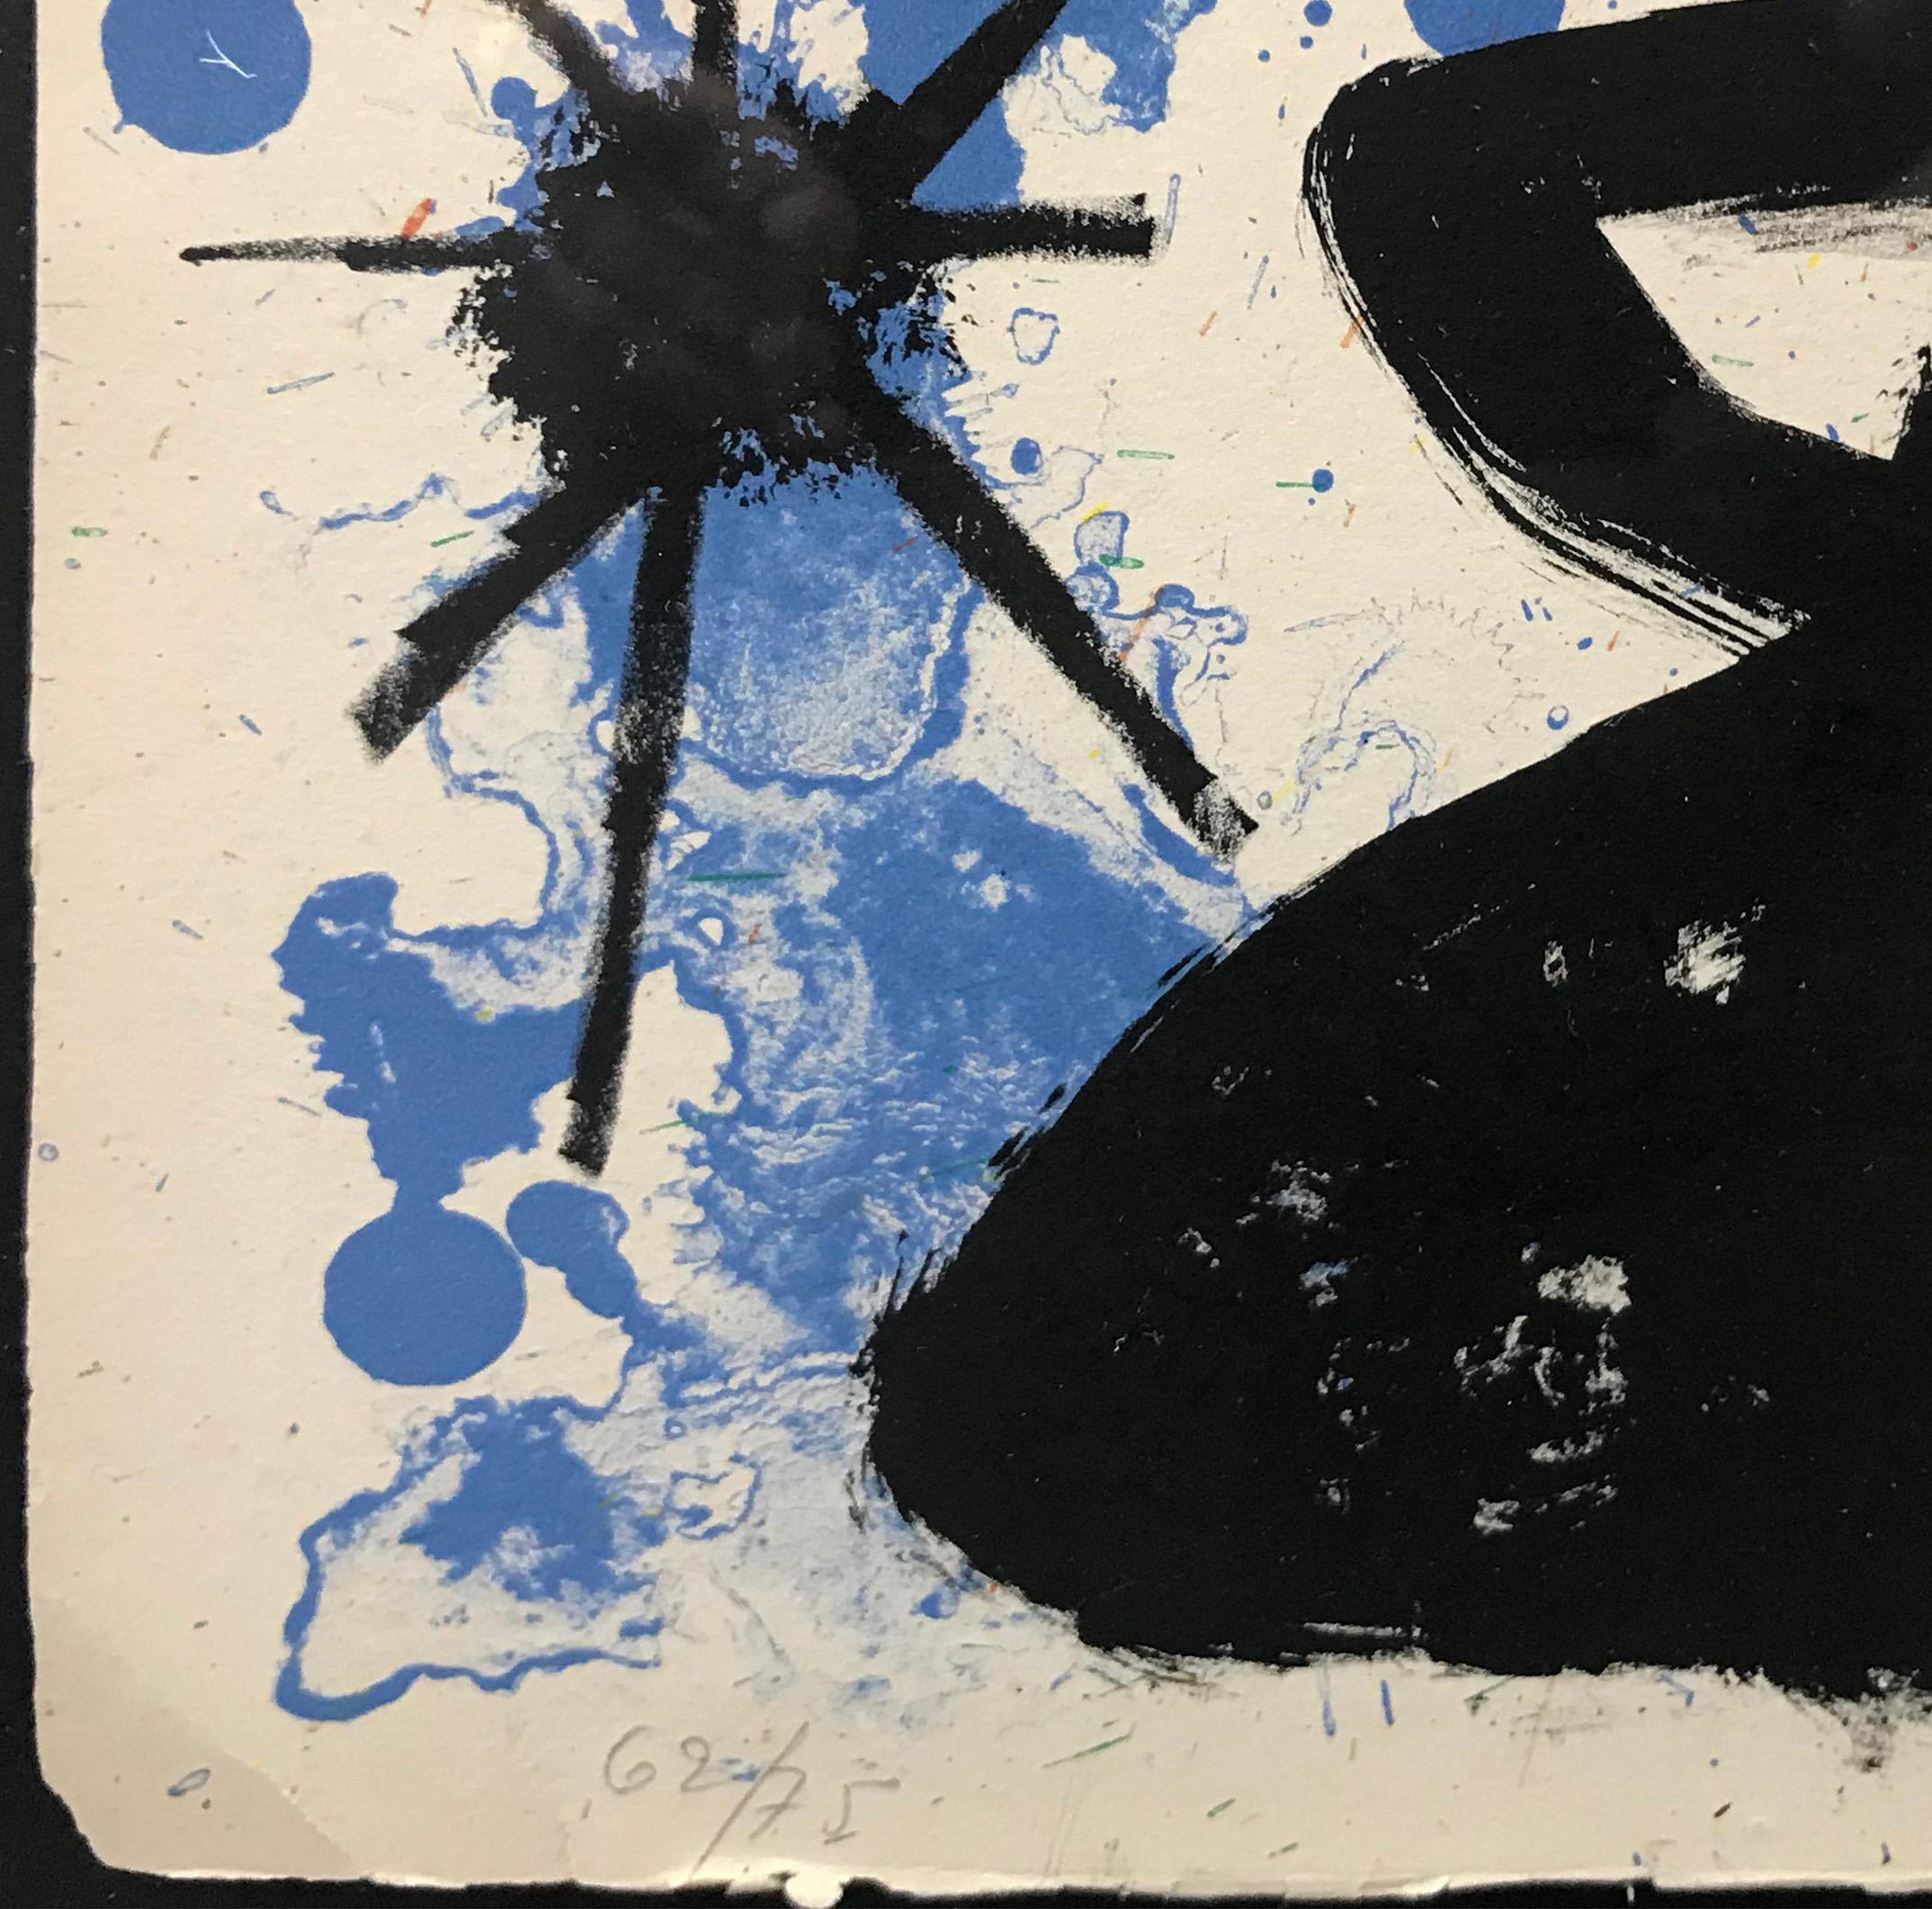 ALBUM 19, PLANCHE 3 - Surrealist Print by Joan Miró